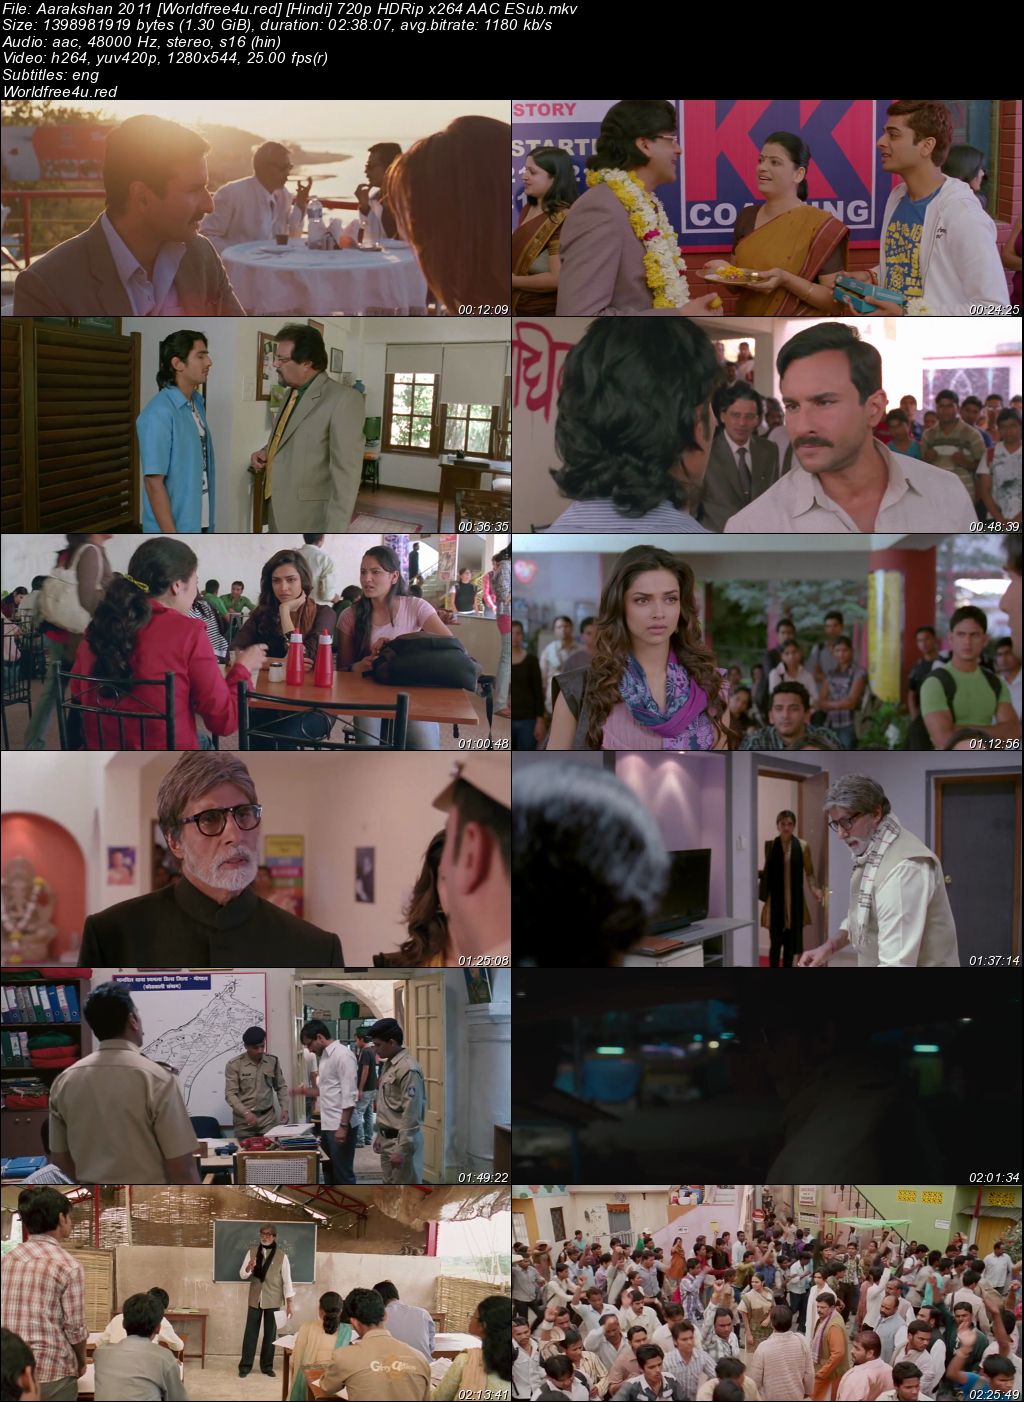 Aarakshan 2011 Hindi Movie Download || HDRip 720p